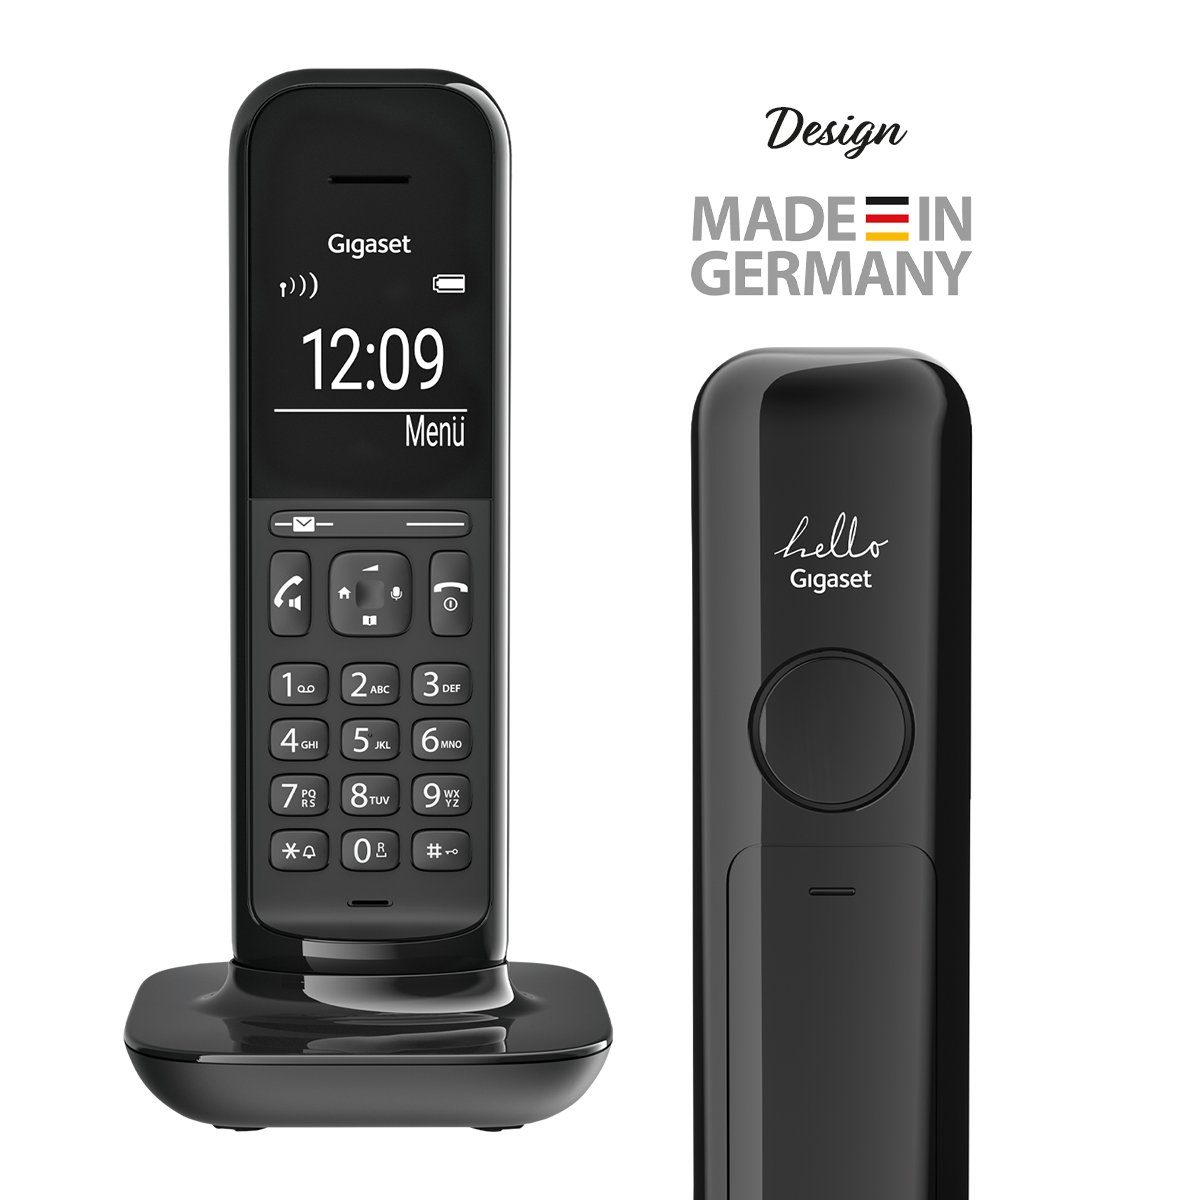 Schnurloses mit Schnurloses und Display DECT-Telefon Gigaset Design-Telefon Freisprechfunktion großem